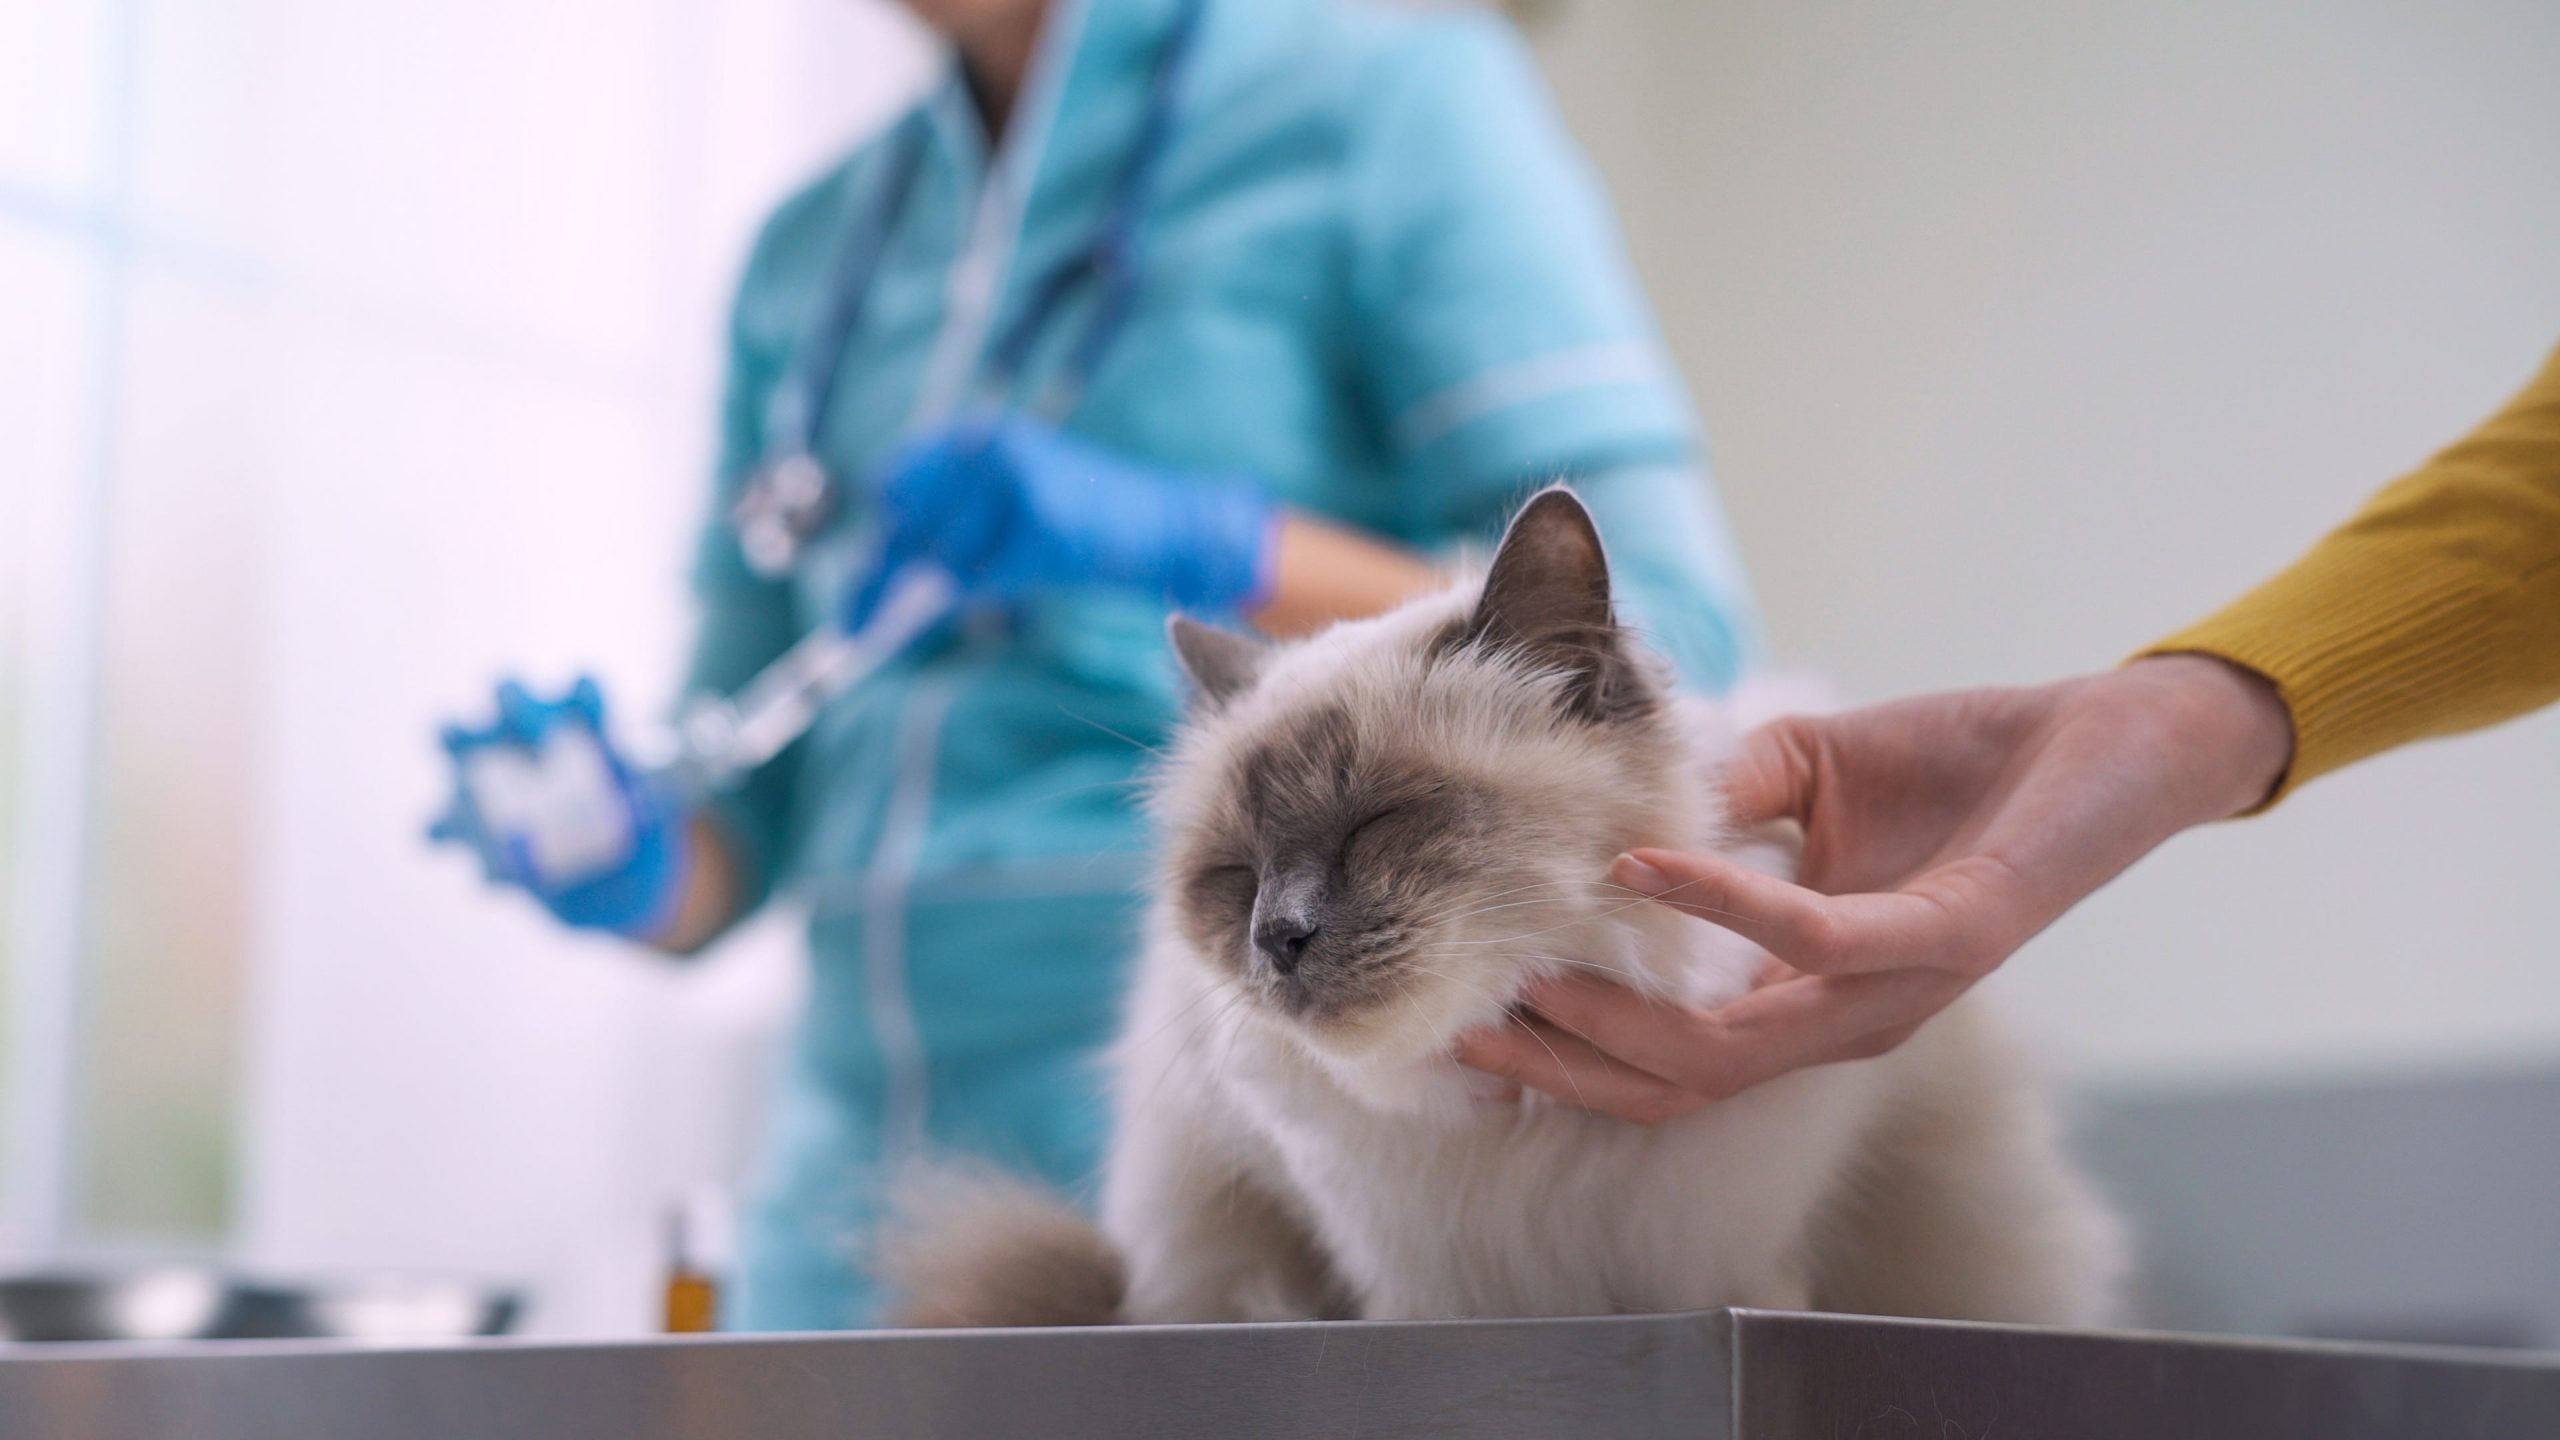 A cat at a vet clinic.